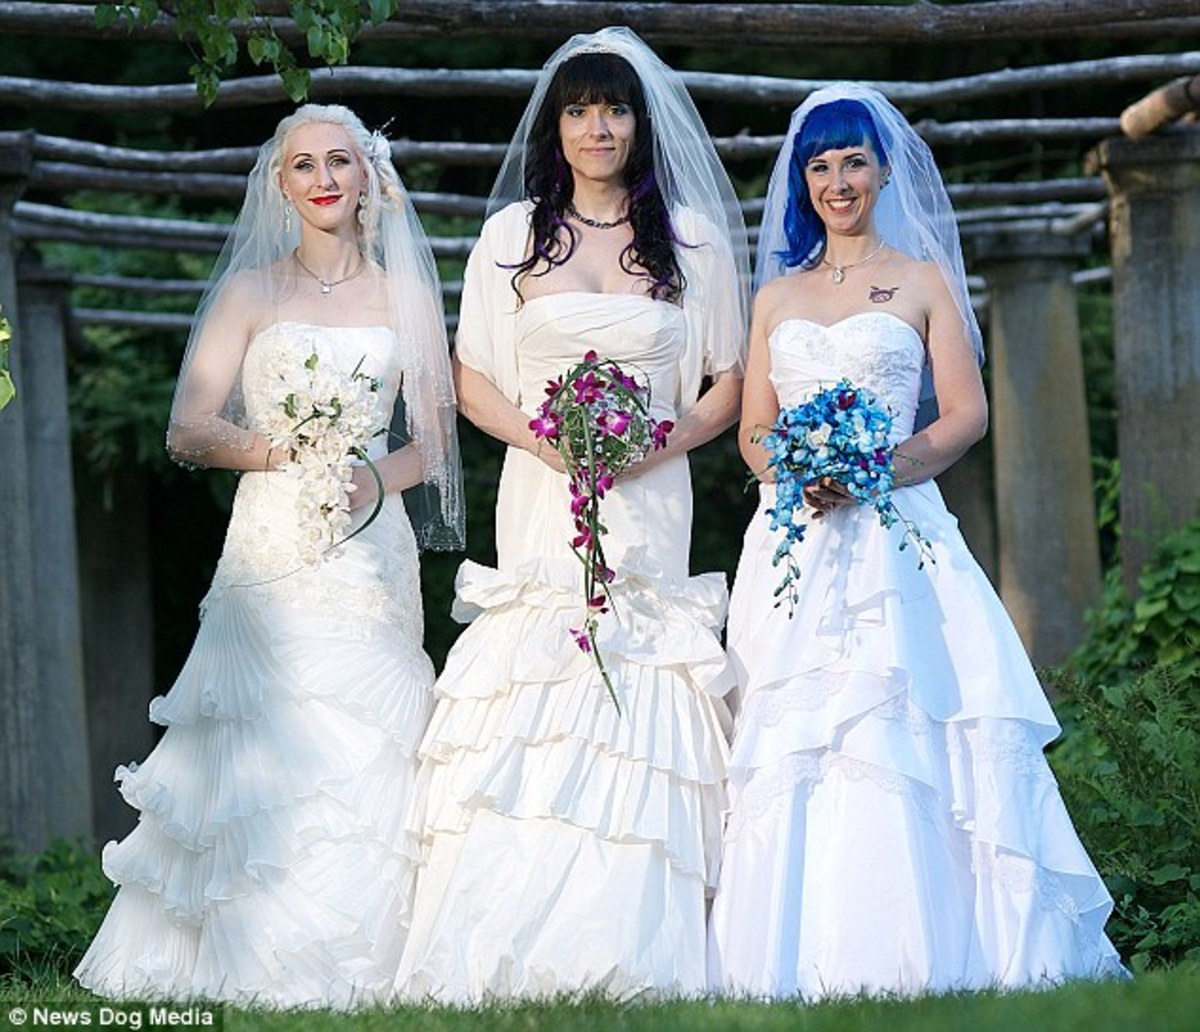 Αυτές οι τρείς γυναίκες παντρεύτηκαν μεταξύ τους και περιμένουν και παιδί!